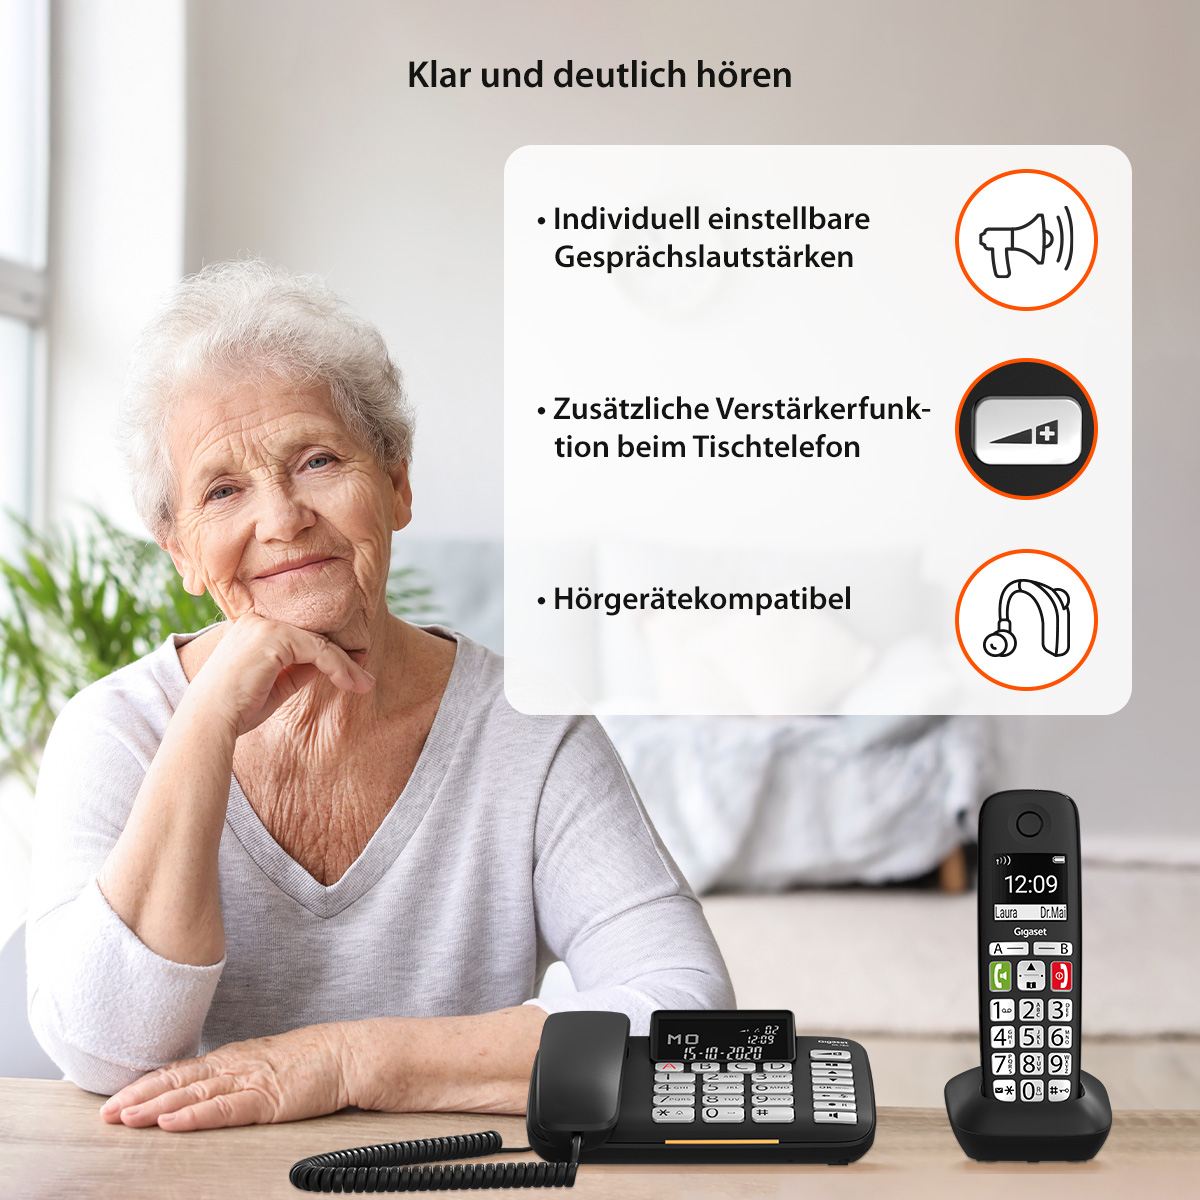 Gigaset DL780 plus : nouveau duo de téléphone orientés seniors